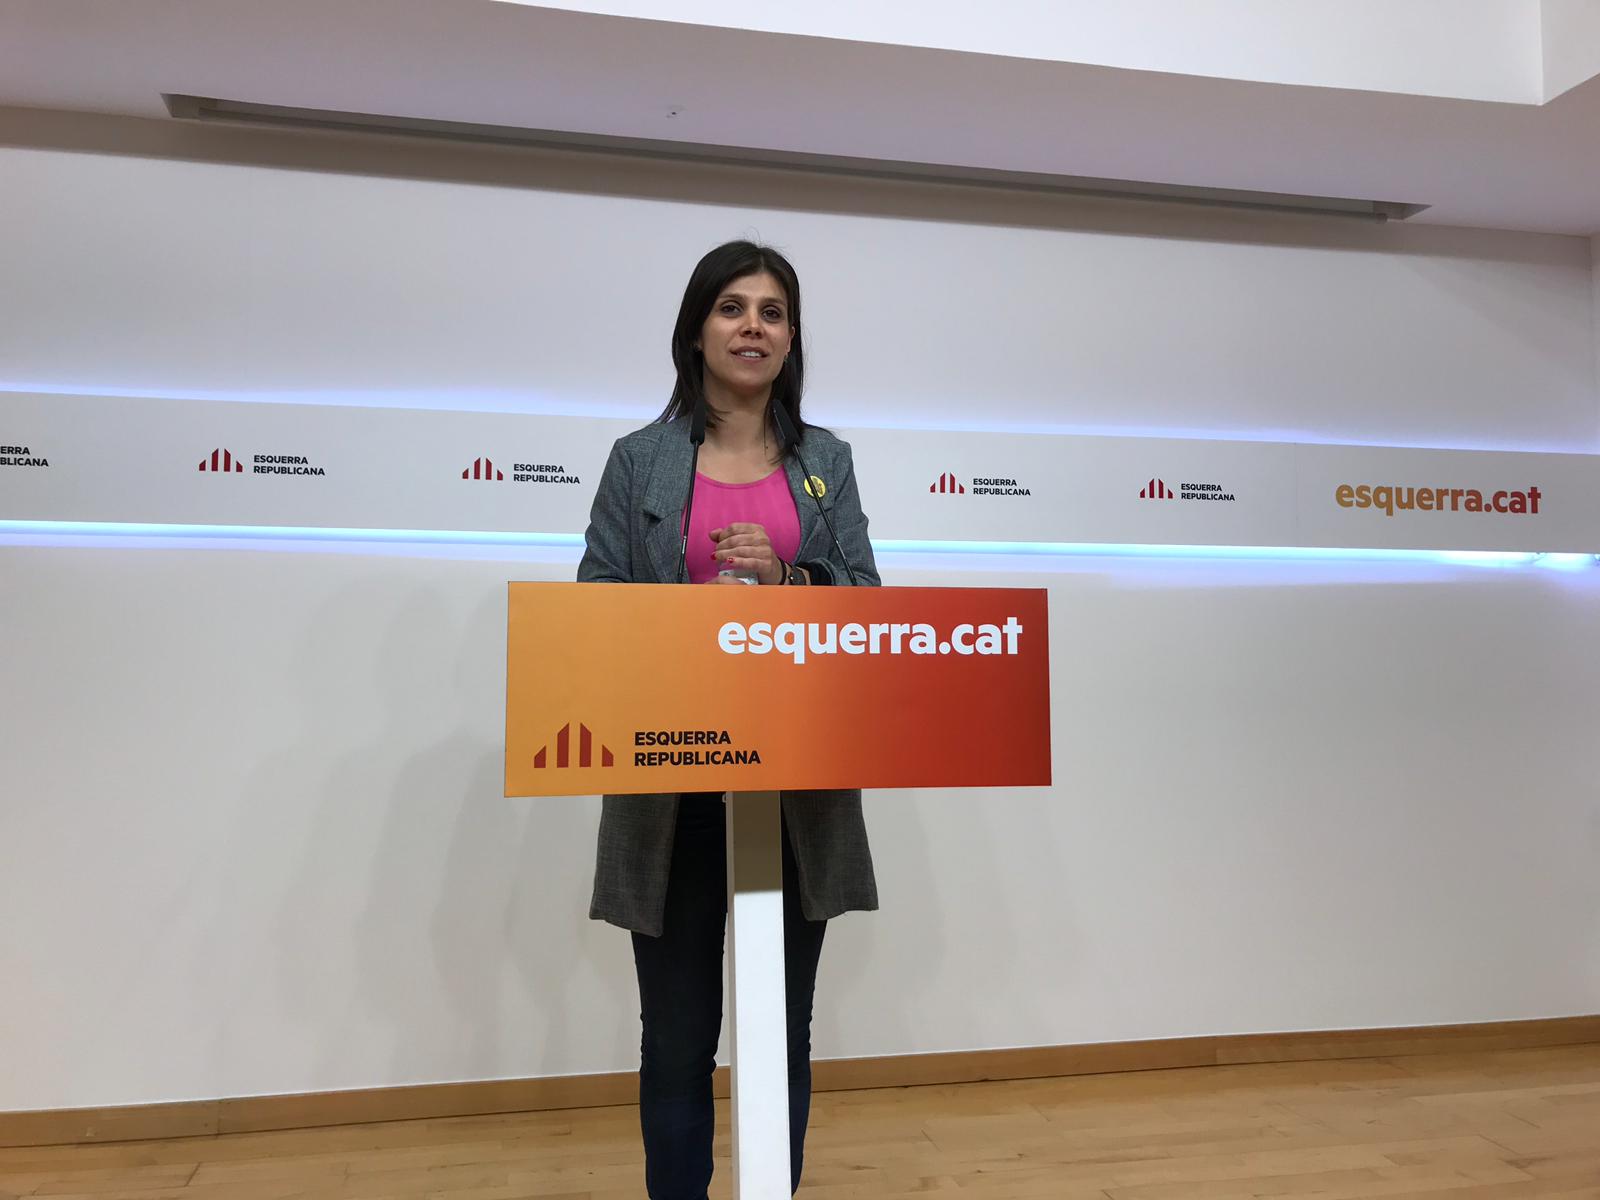 ERC qualifica la candidatura de Puigdemont de "bona notícia" i insisteix en la unitat "estratègica"